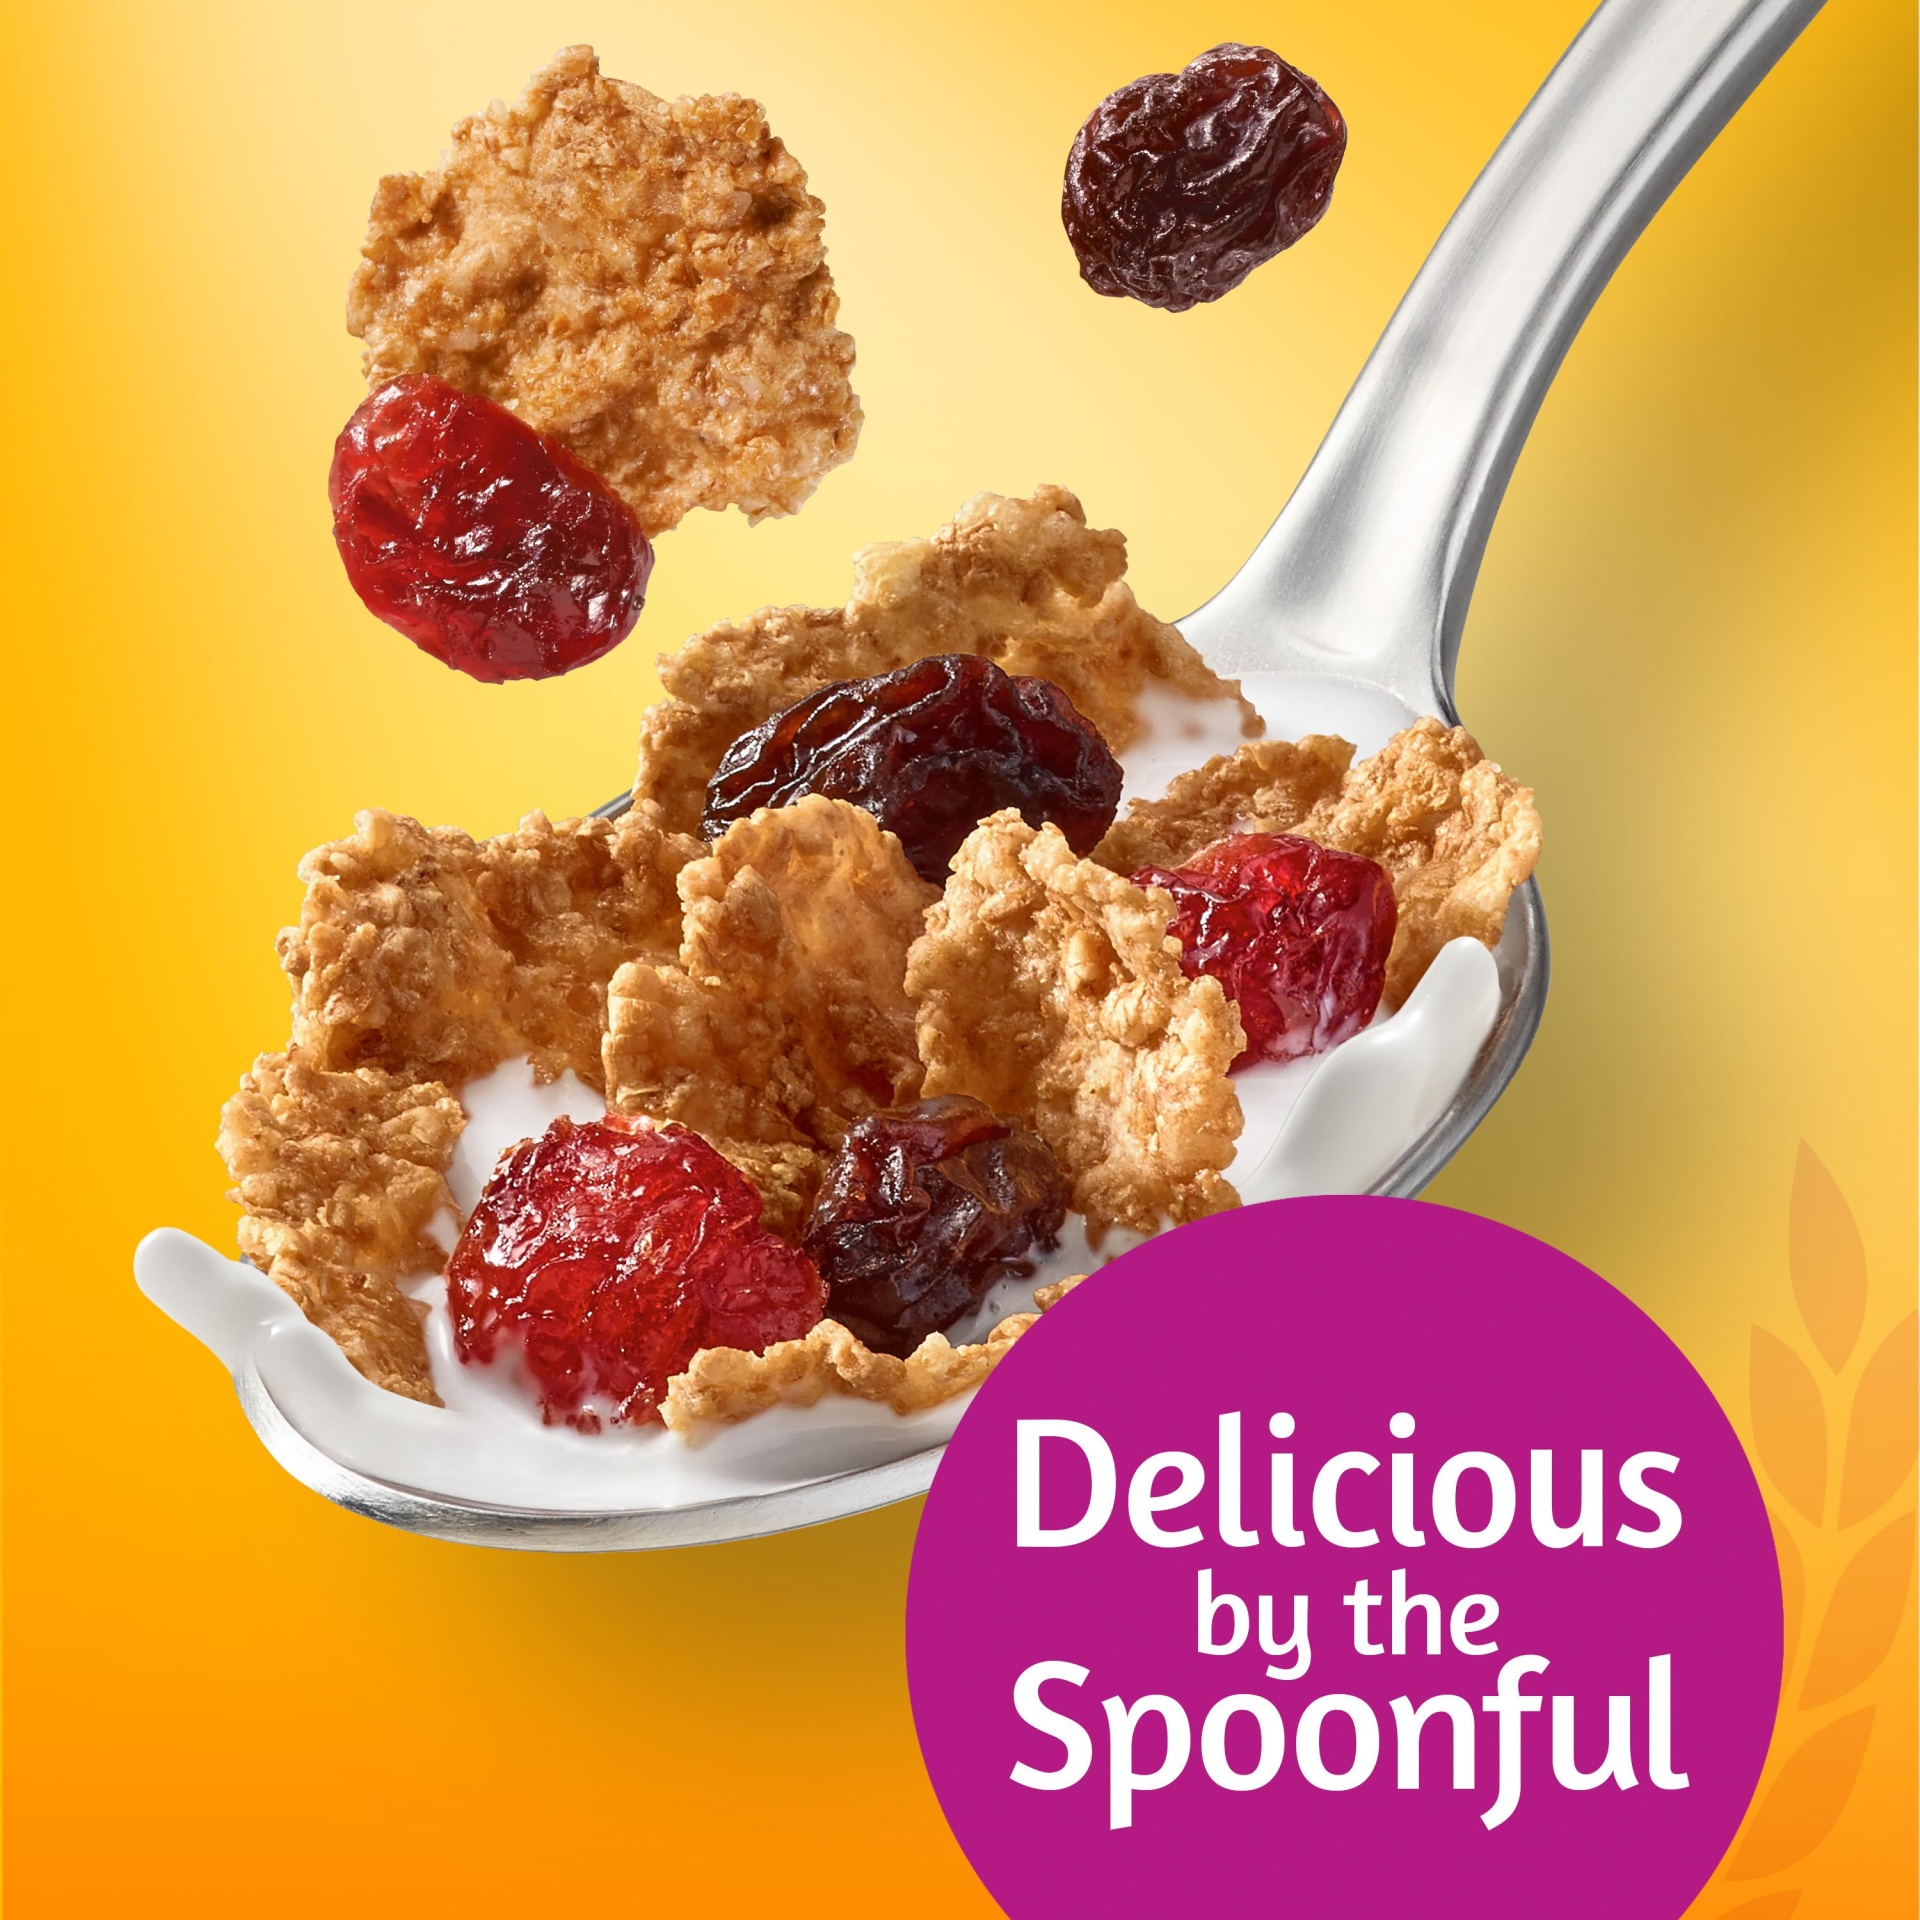 slide 5 of 5, Kellogg's Raisin Bran Breakfast Cereal, Good Source of Fiber, Original with Cranberries, 19.8 oz